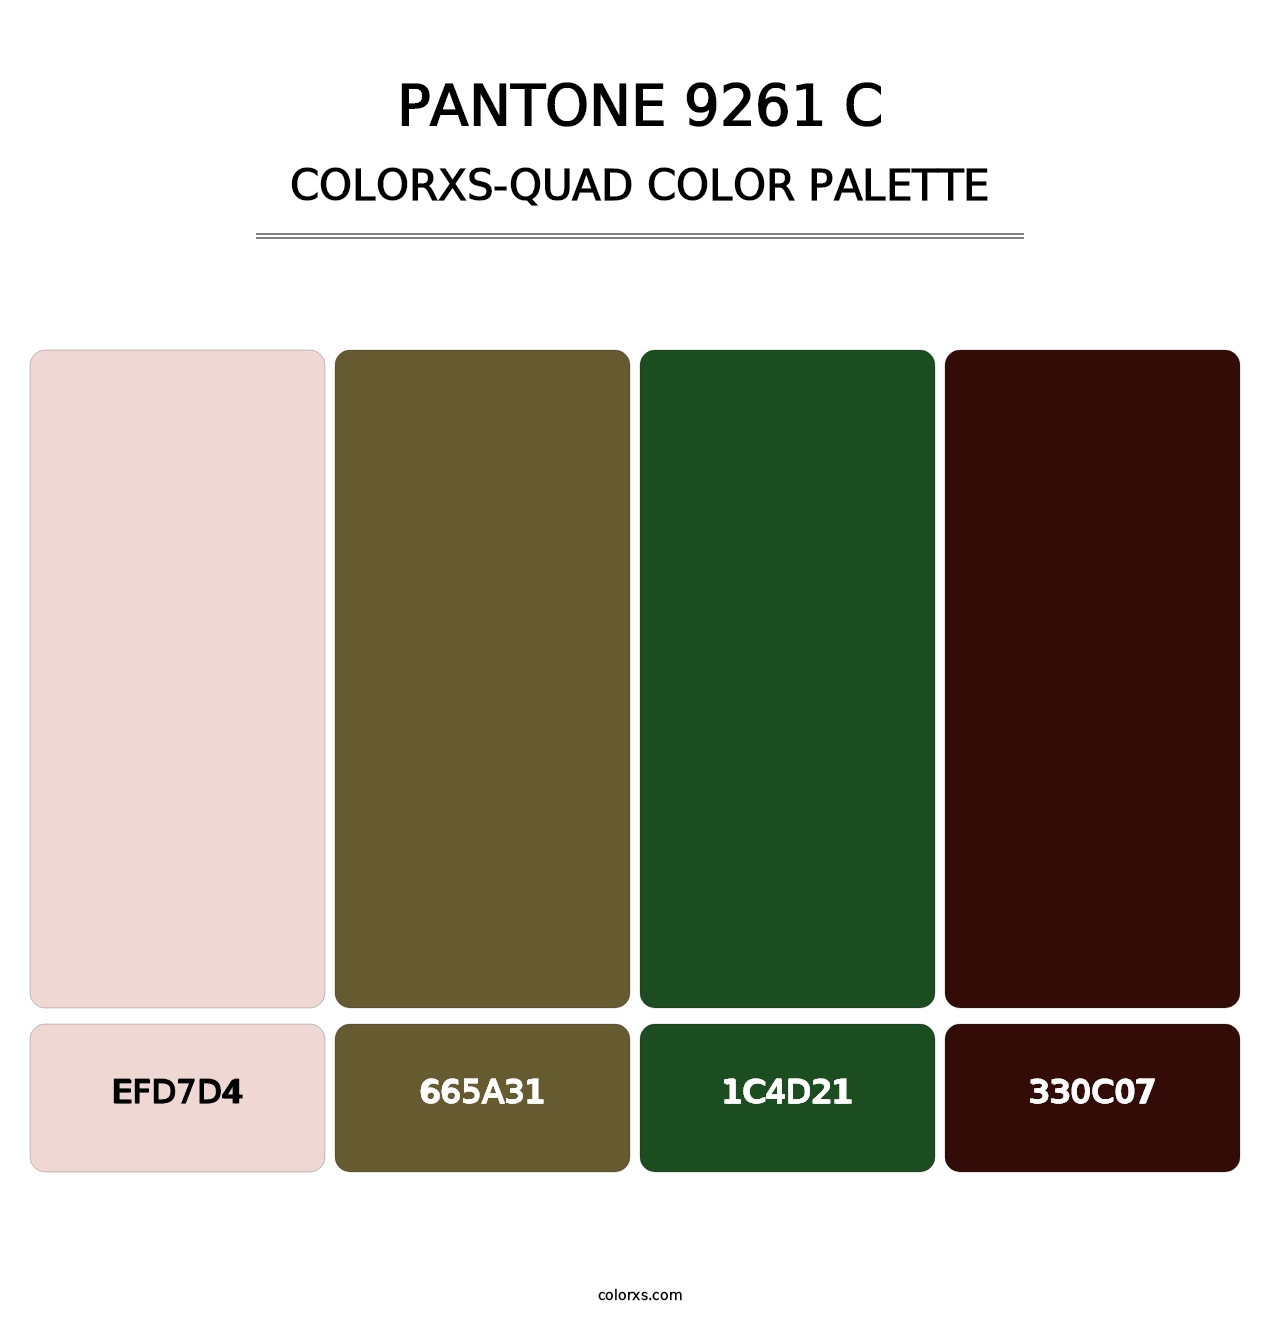 PANTONE 9261 C - Colorxs Quad Palette